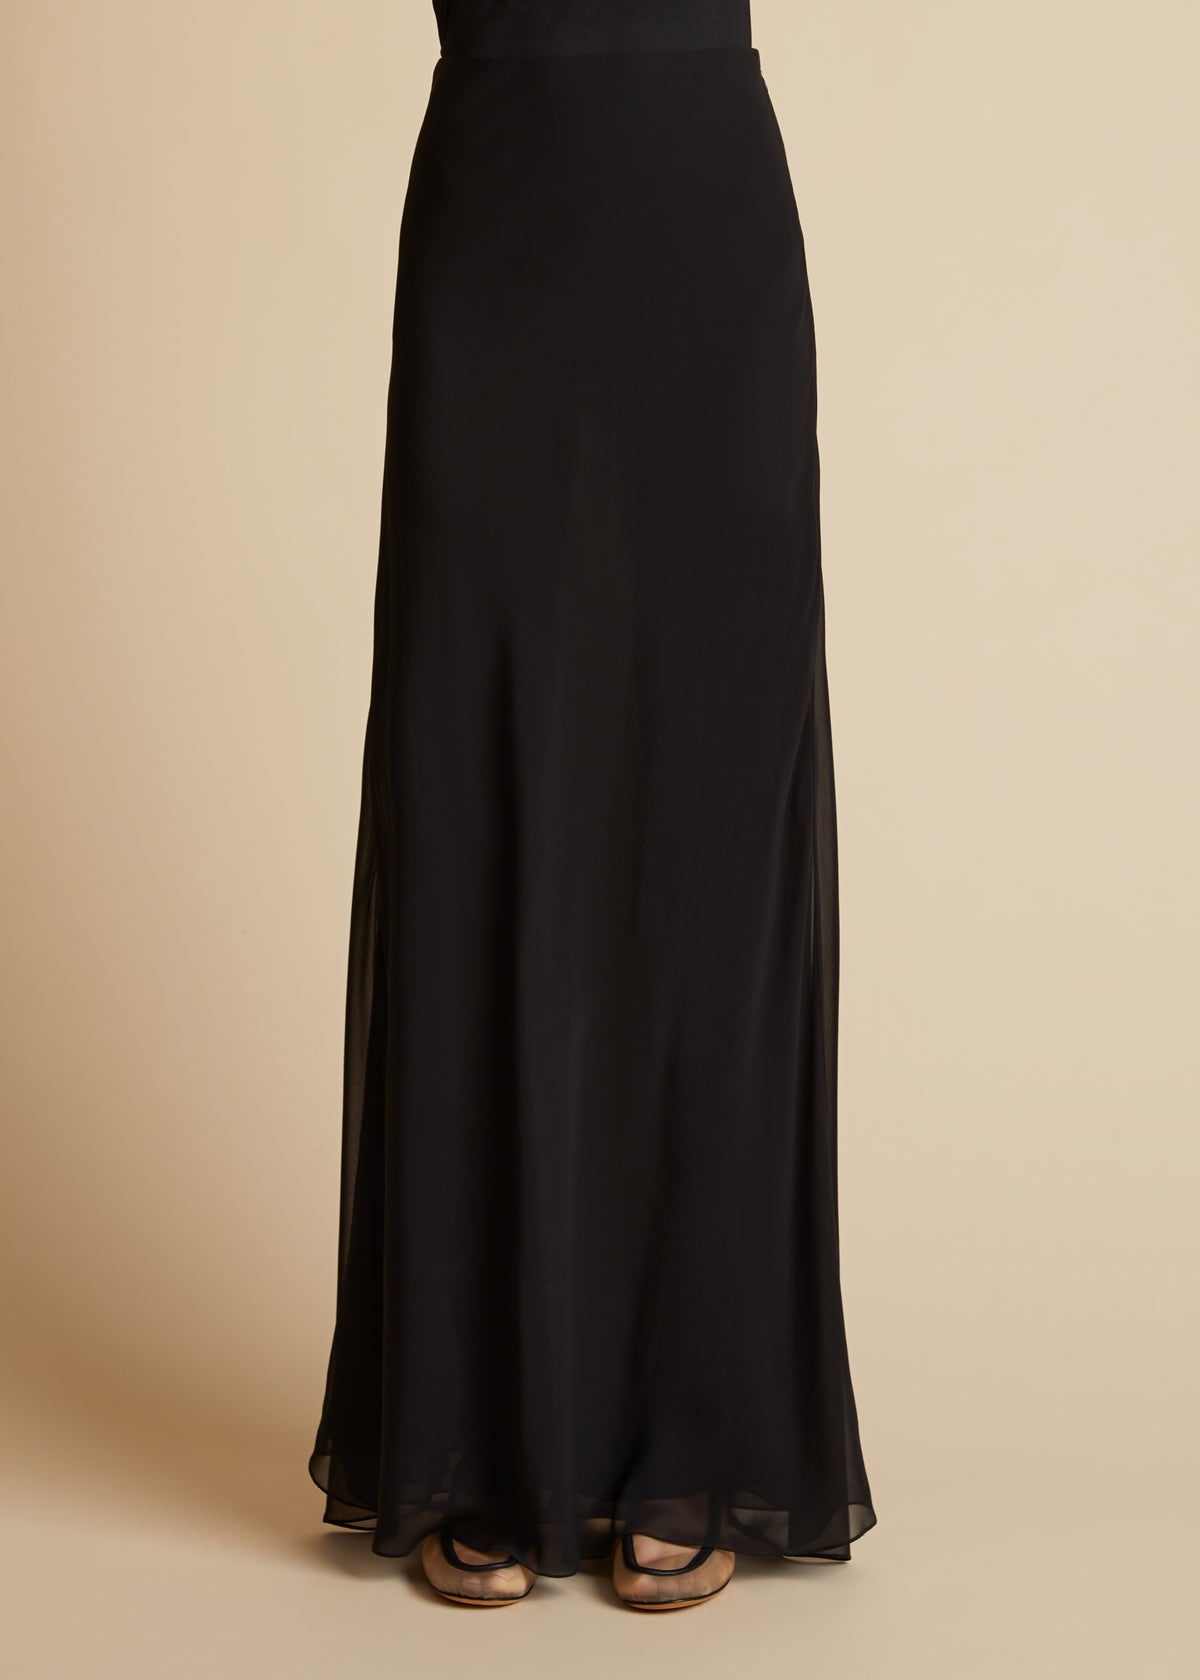 The Mauva Skirt in Black - 1